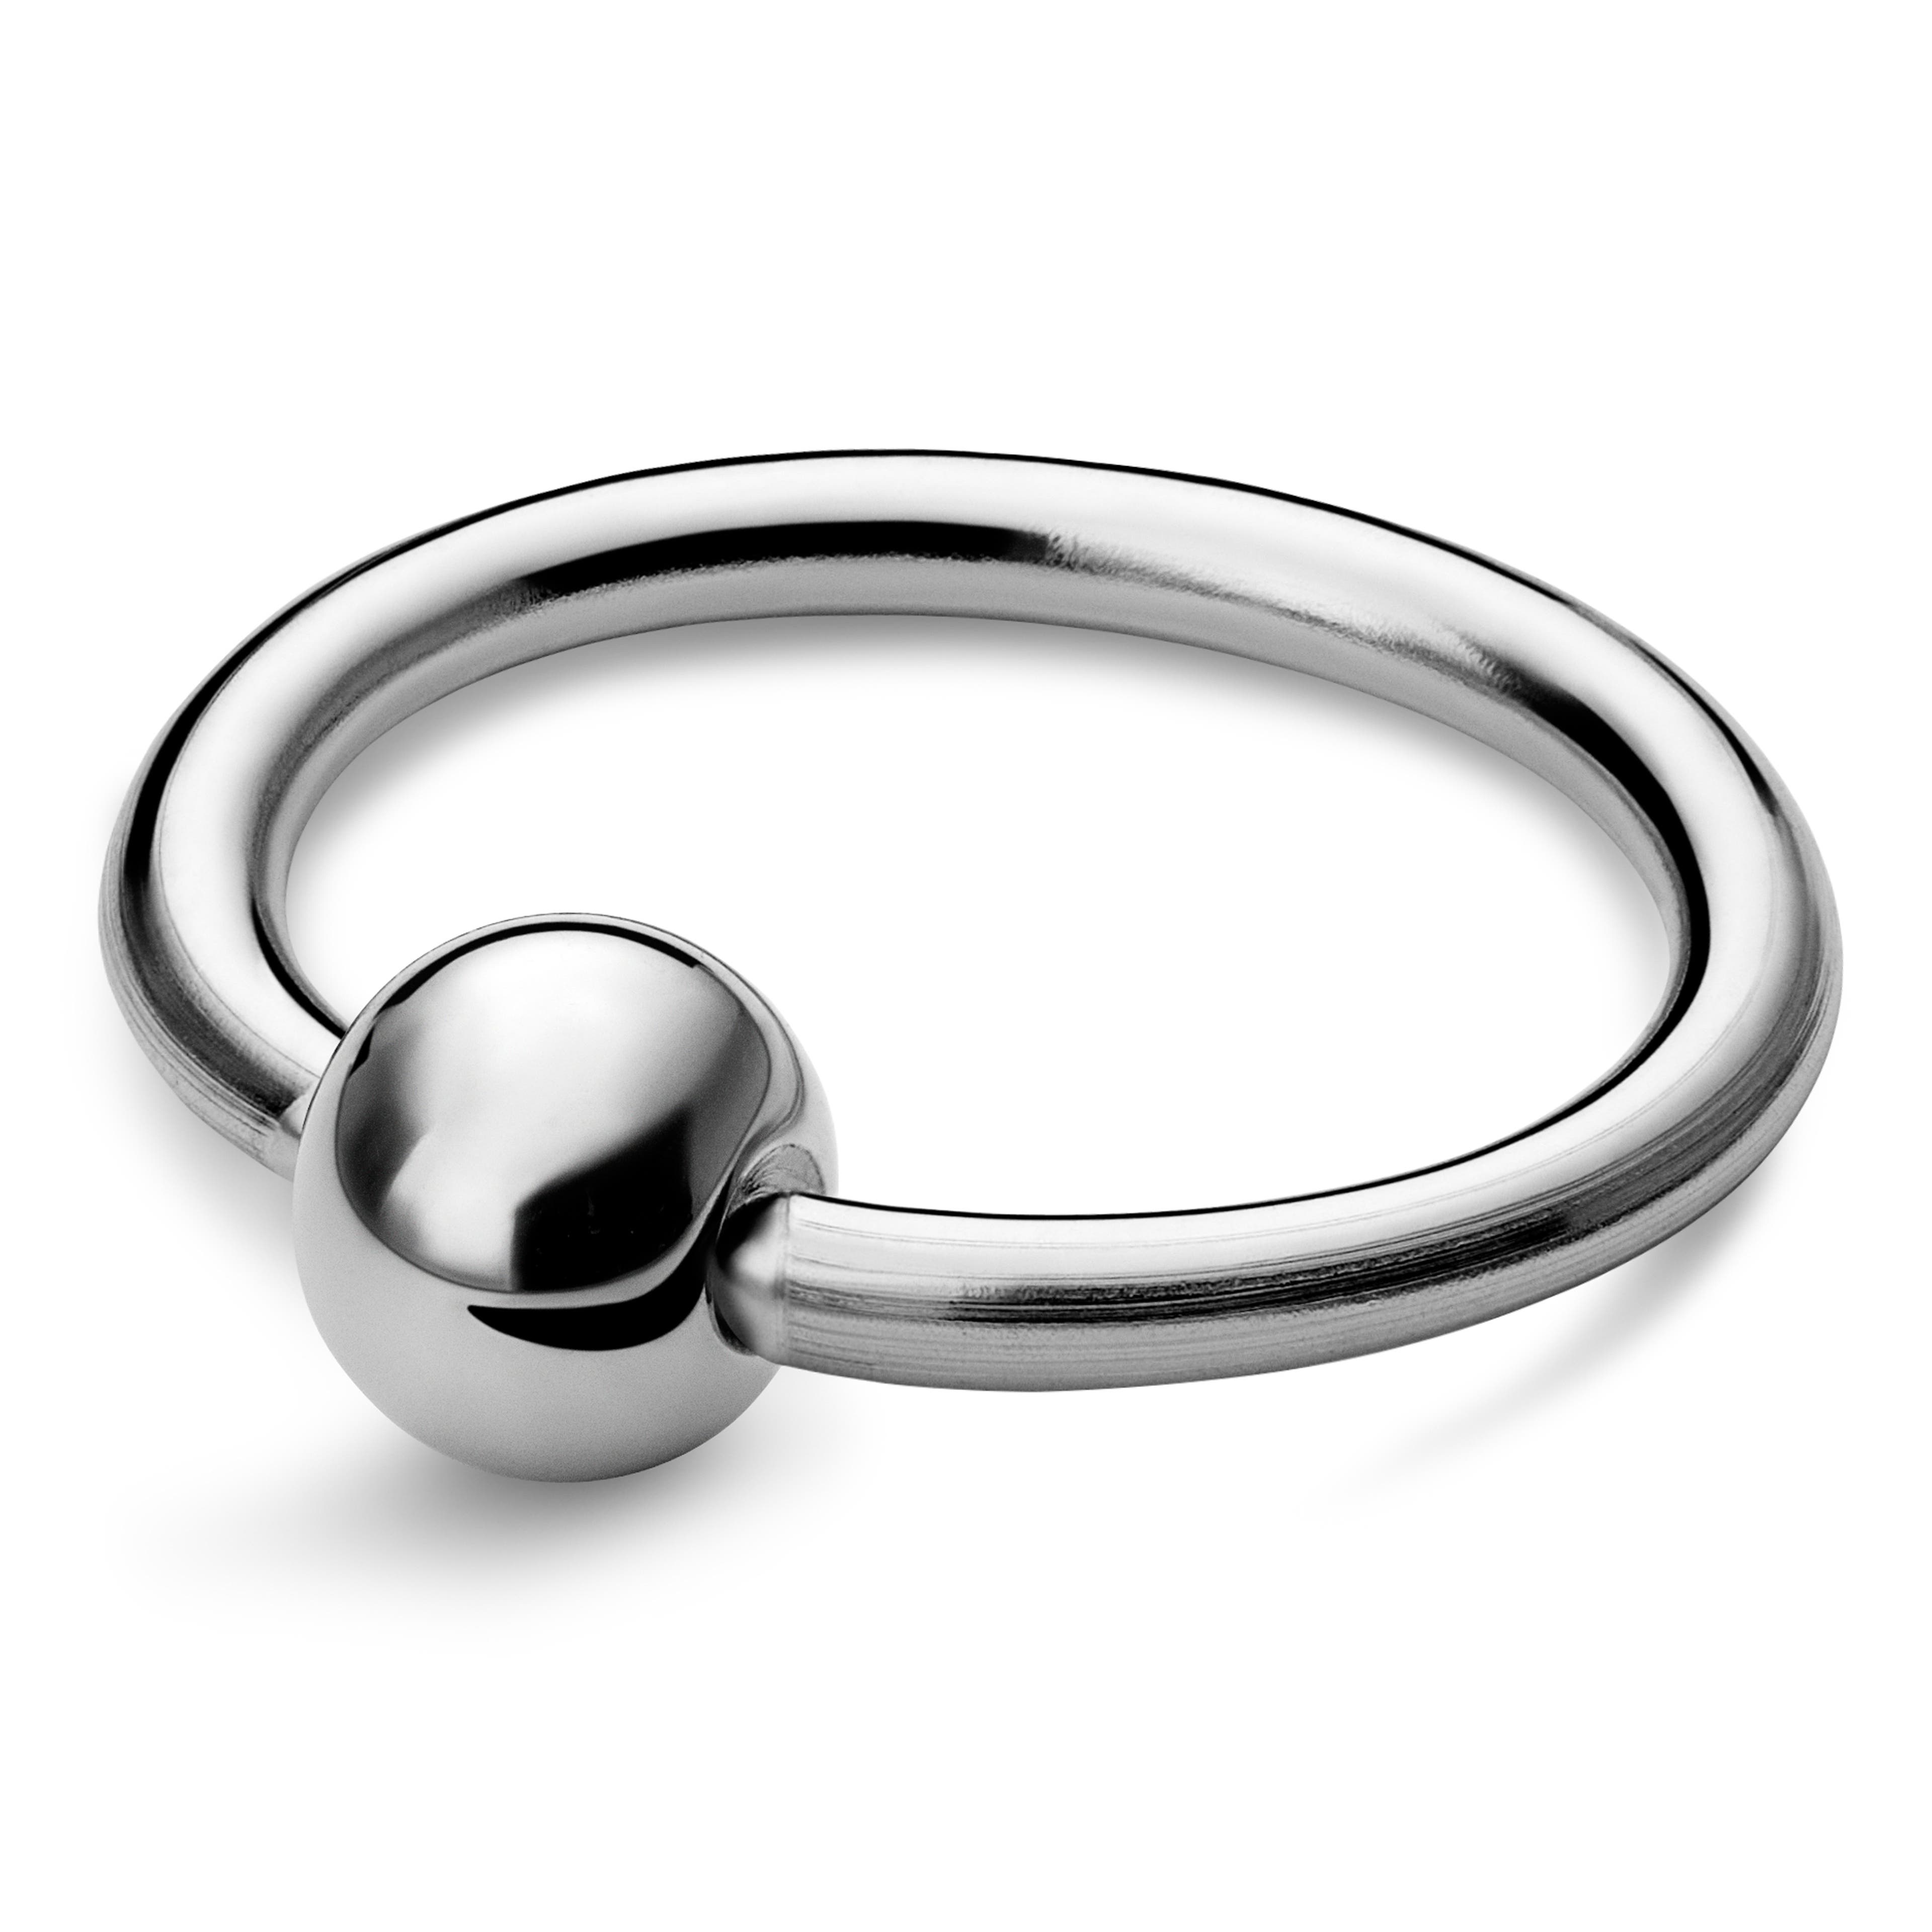  Piercing anneau avec perle captive en titane argenté 12 mm